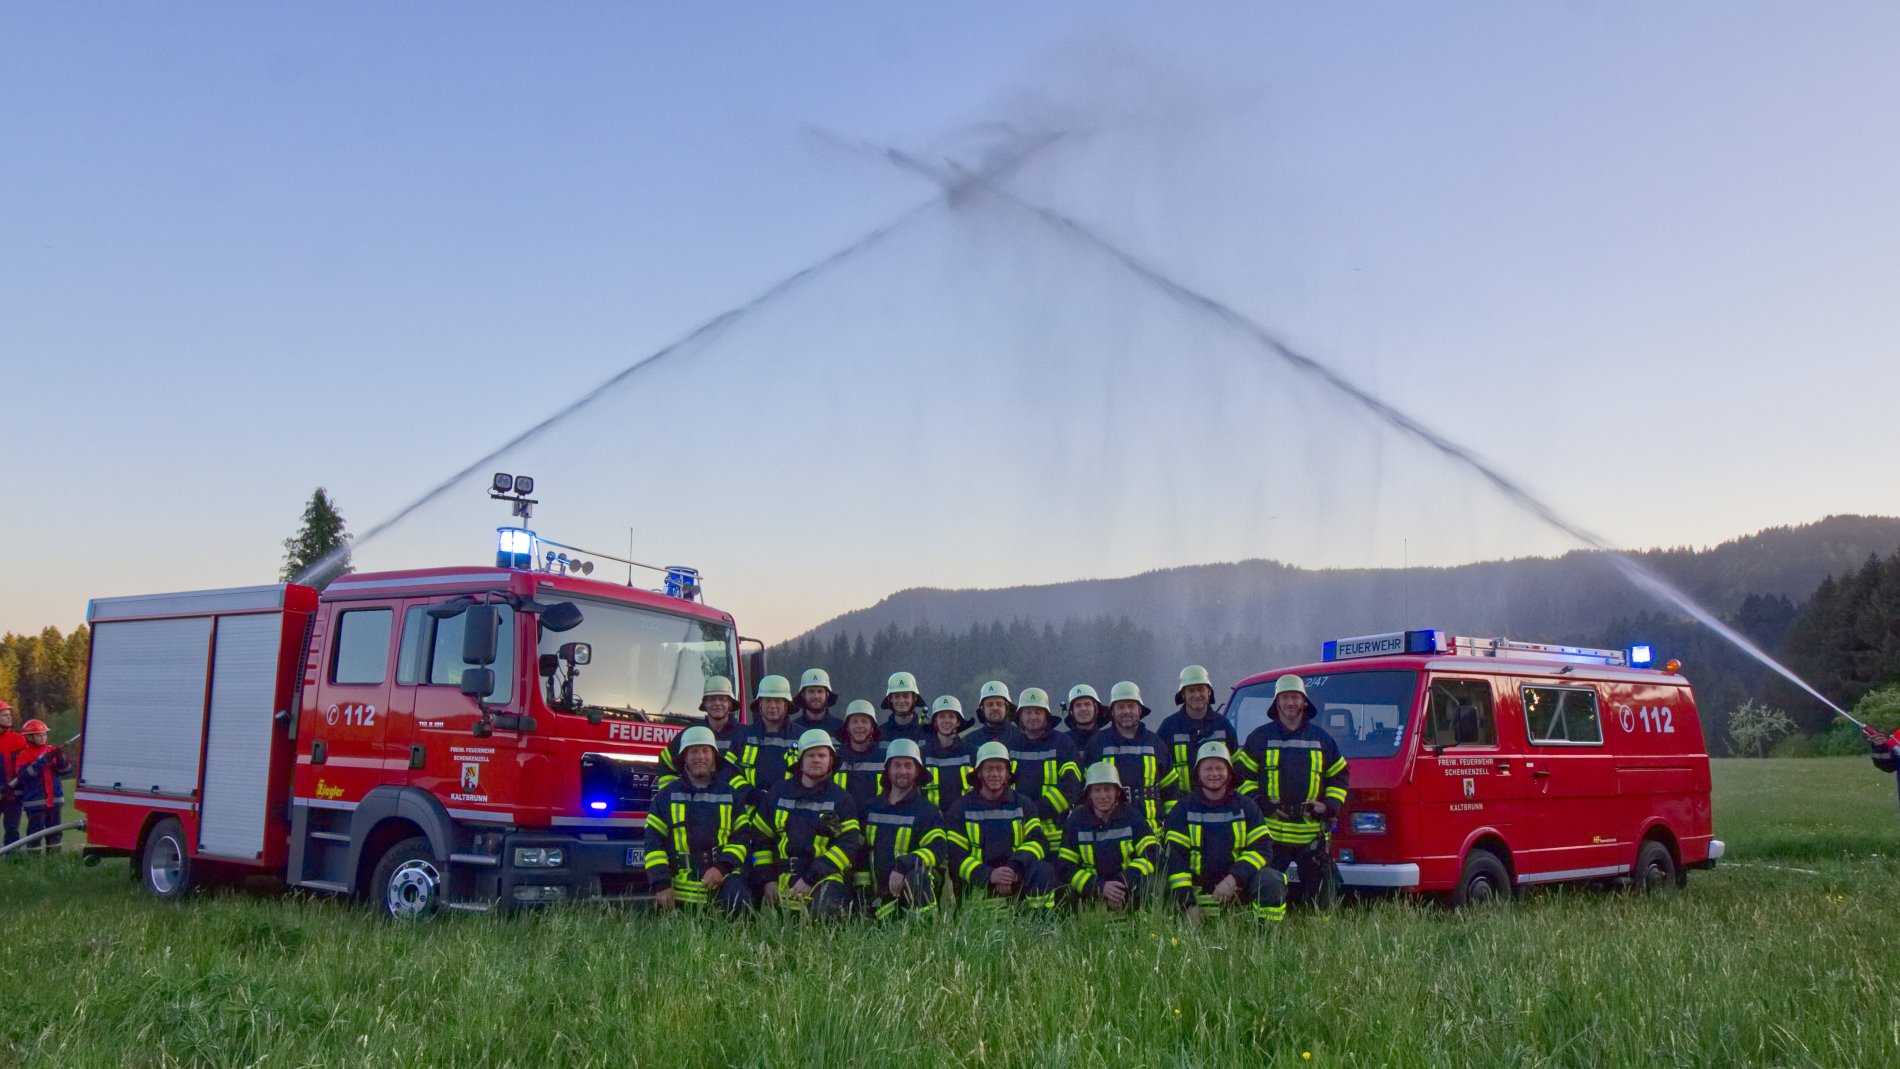 Bild von der Feuerwehrabteilung Kaltbrunn / Urheber: Fuerwehr Kaltbrunn